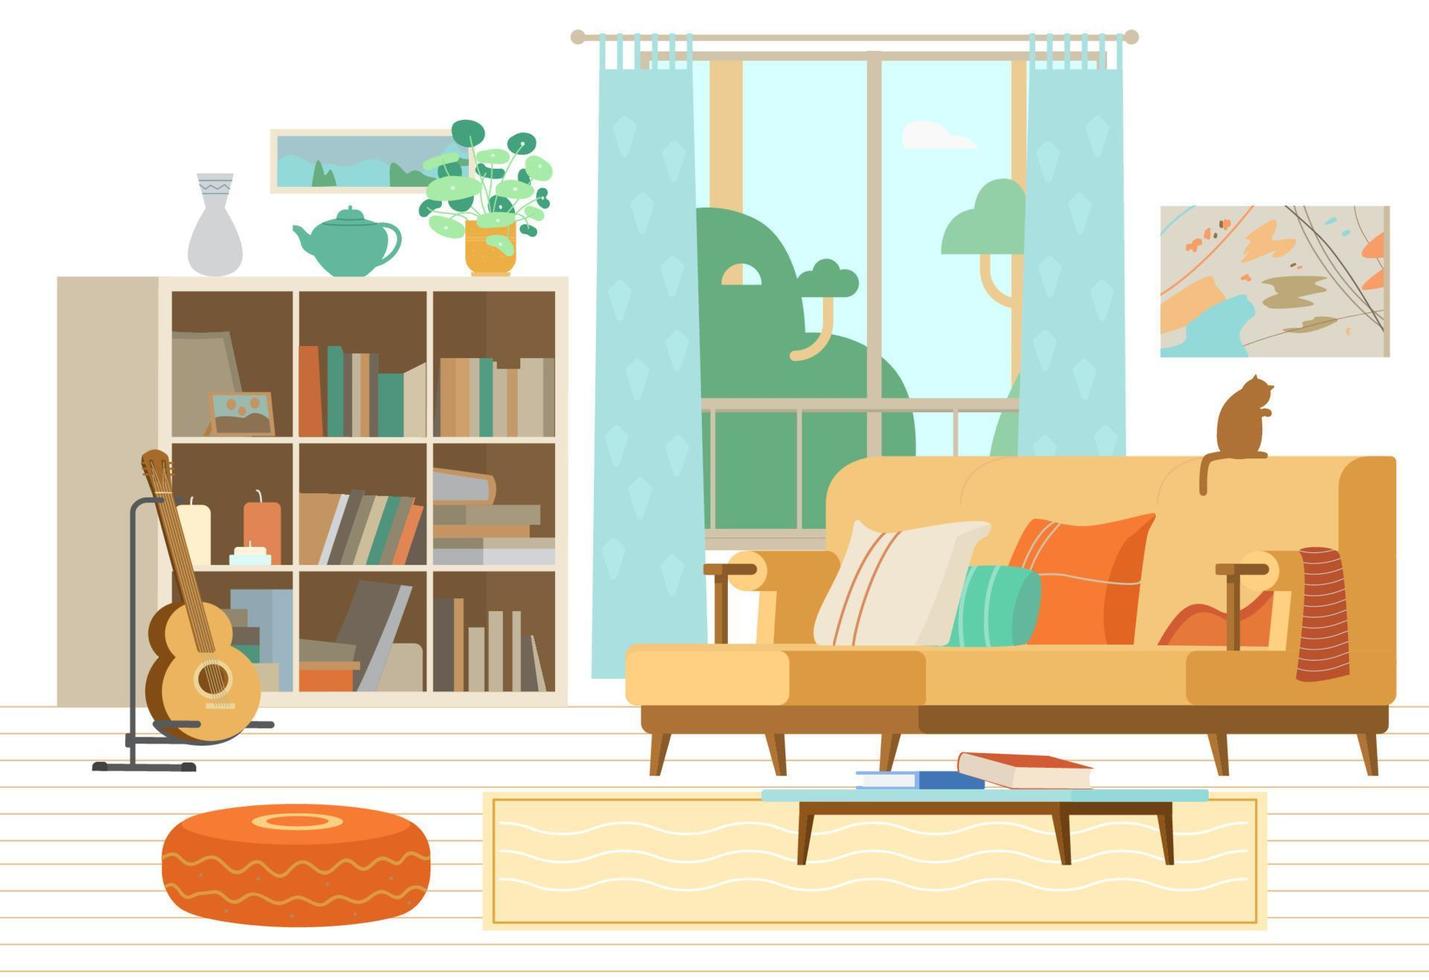 acogedora sala de estar interior ilustración vectorial plana. sofá, biblioteca, guitarra en un soporte, mesa baja con libros, taburete acolchado, cuadros abstractos, elementos decorativos. vector